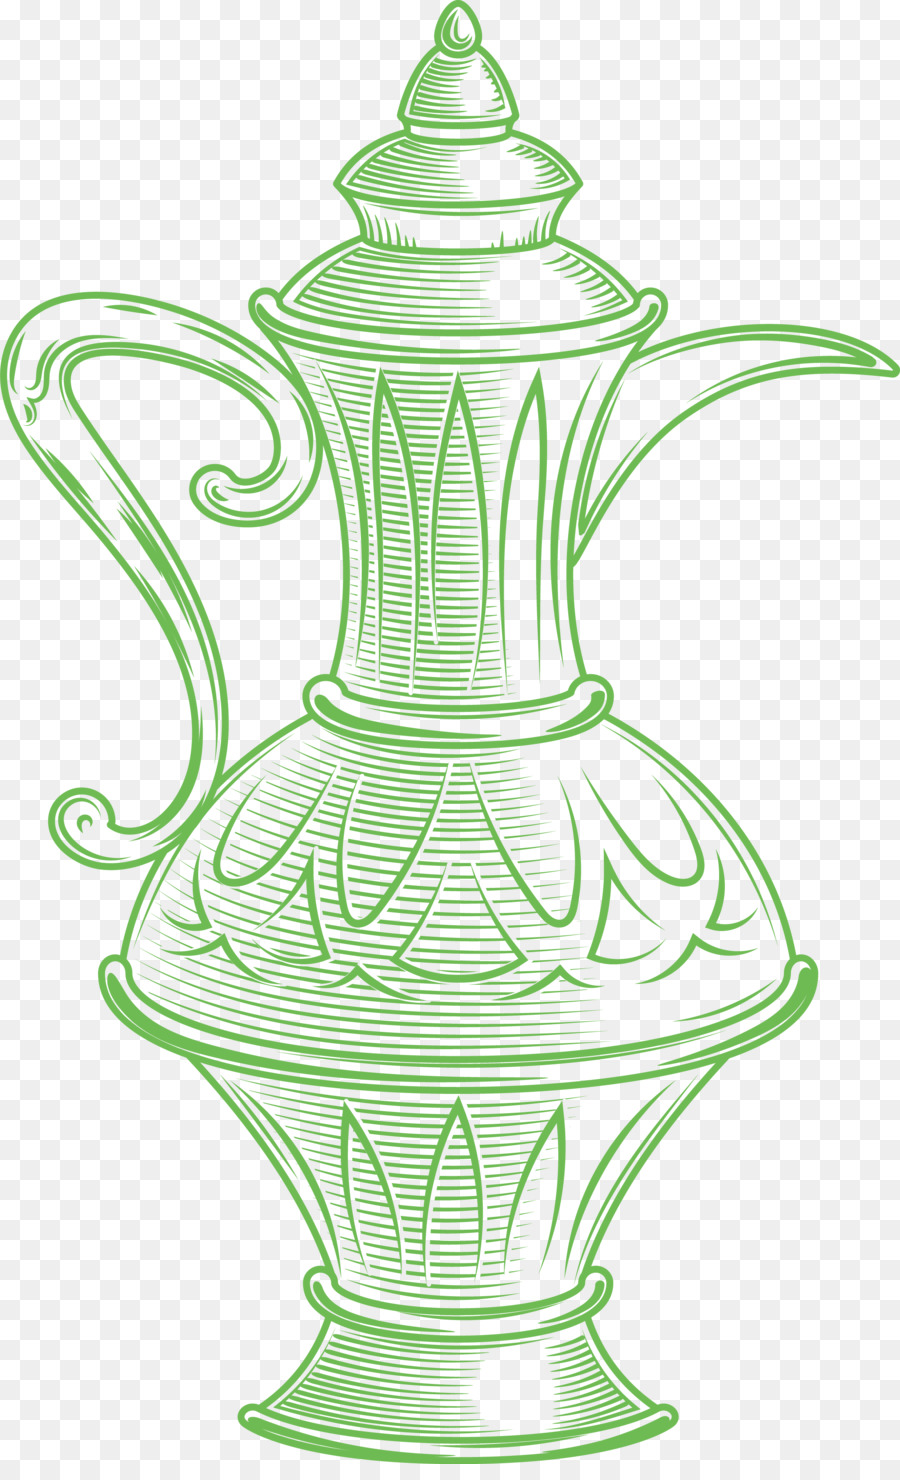 stoviglie vaso verde - 